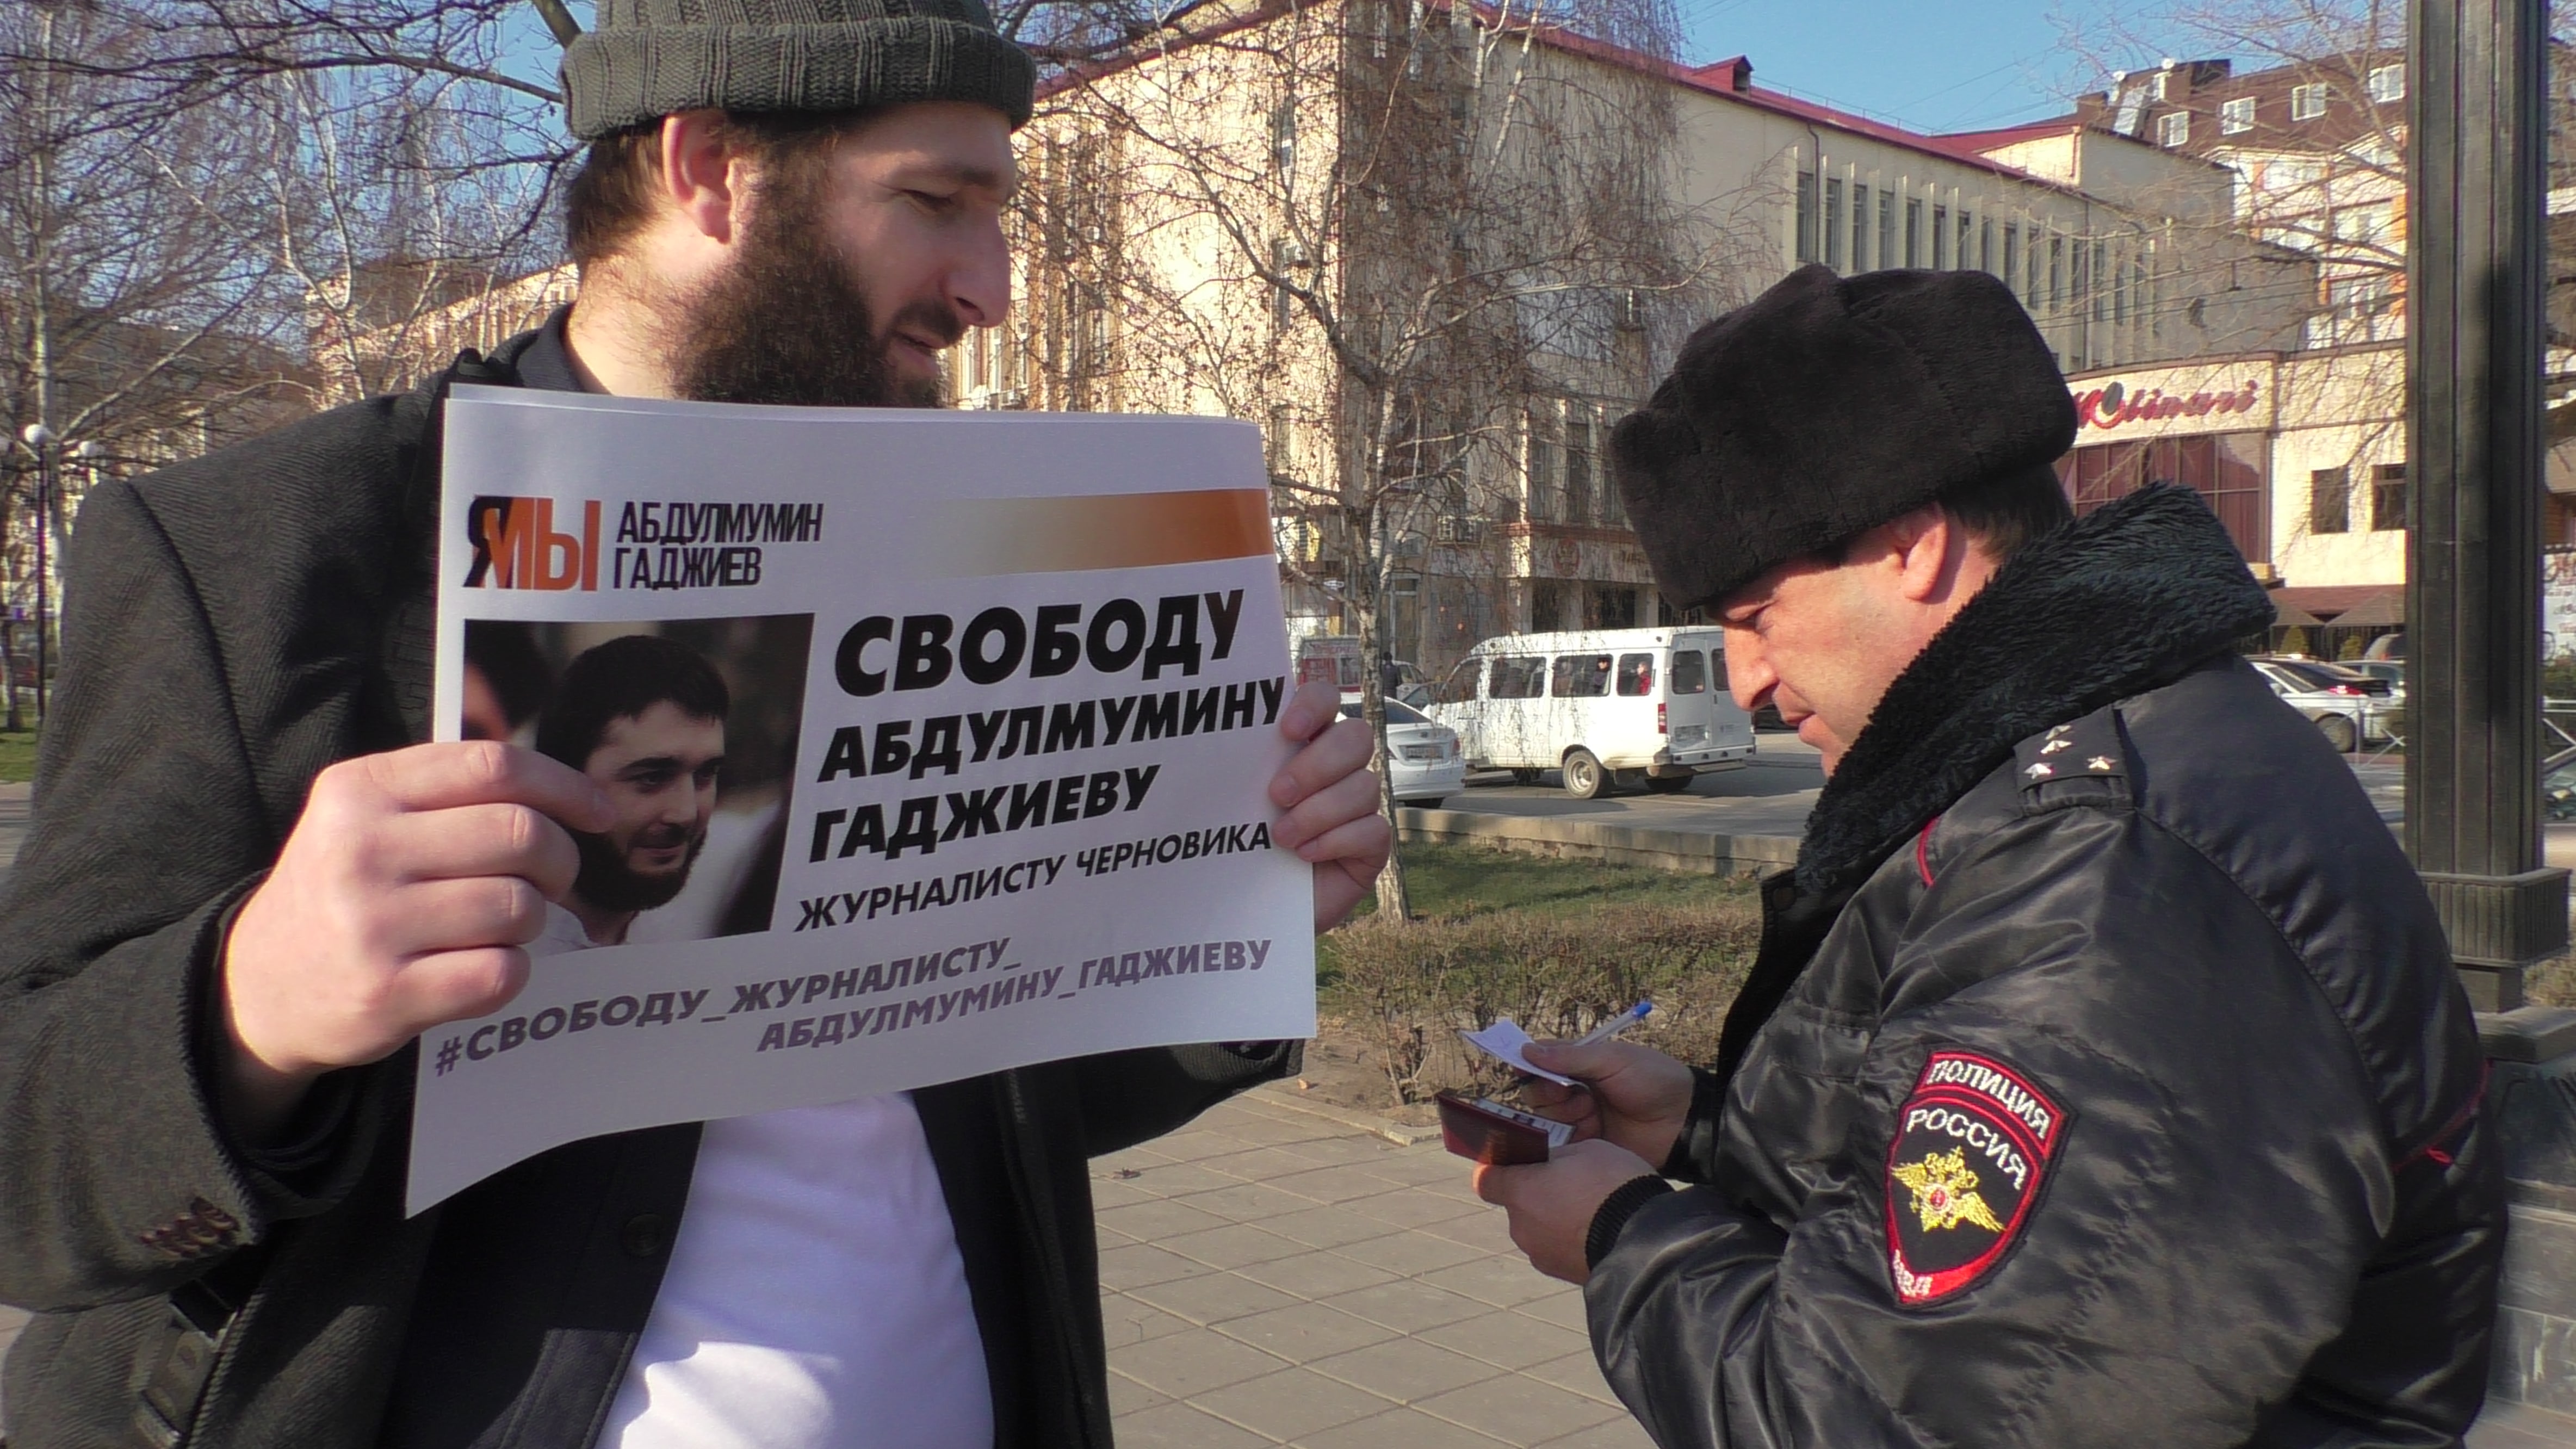 Идрис Юсупов на пикете в поддержку Абдулмумина Гаджиева 27 января 2020 года. Фото Ильяса Капиева для "Кавказского узла"